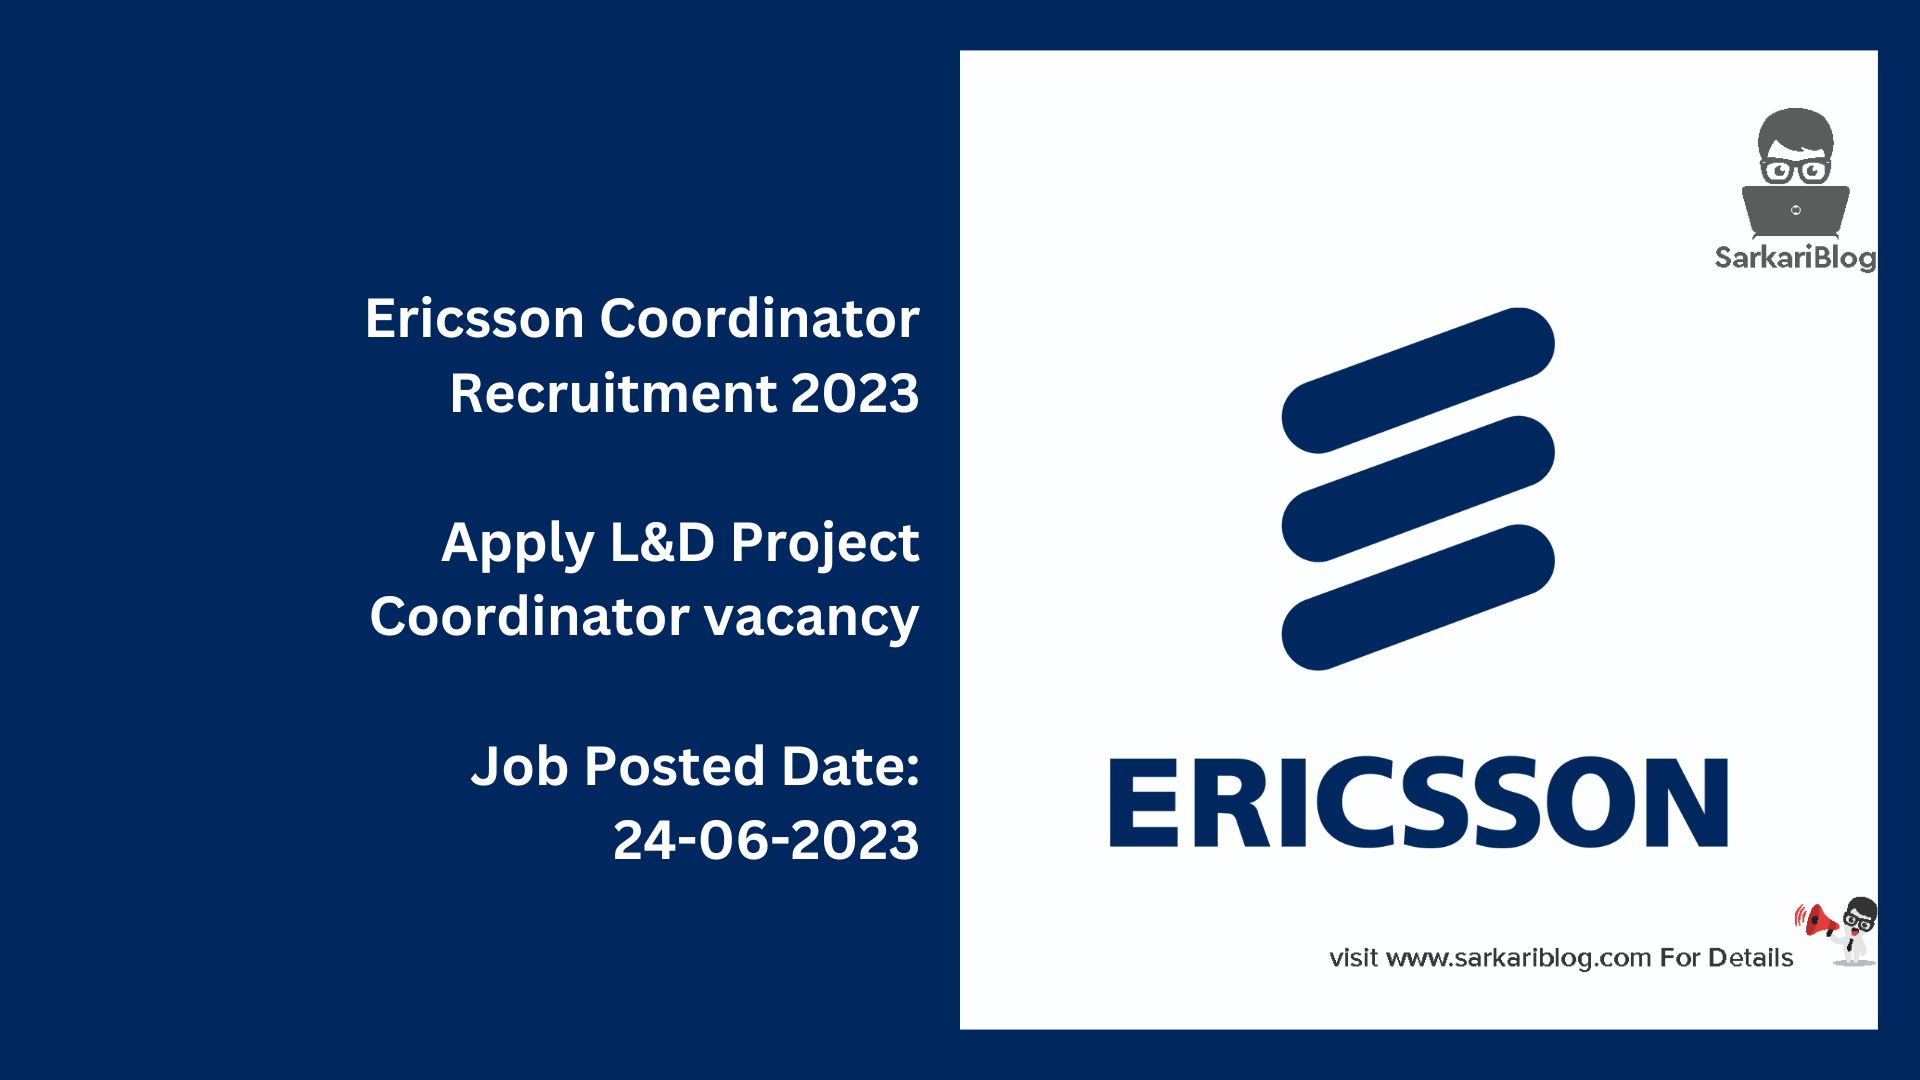 Ericsson Coordinator Recruitment 2023